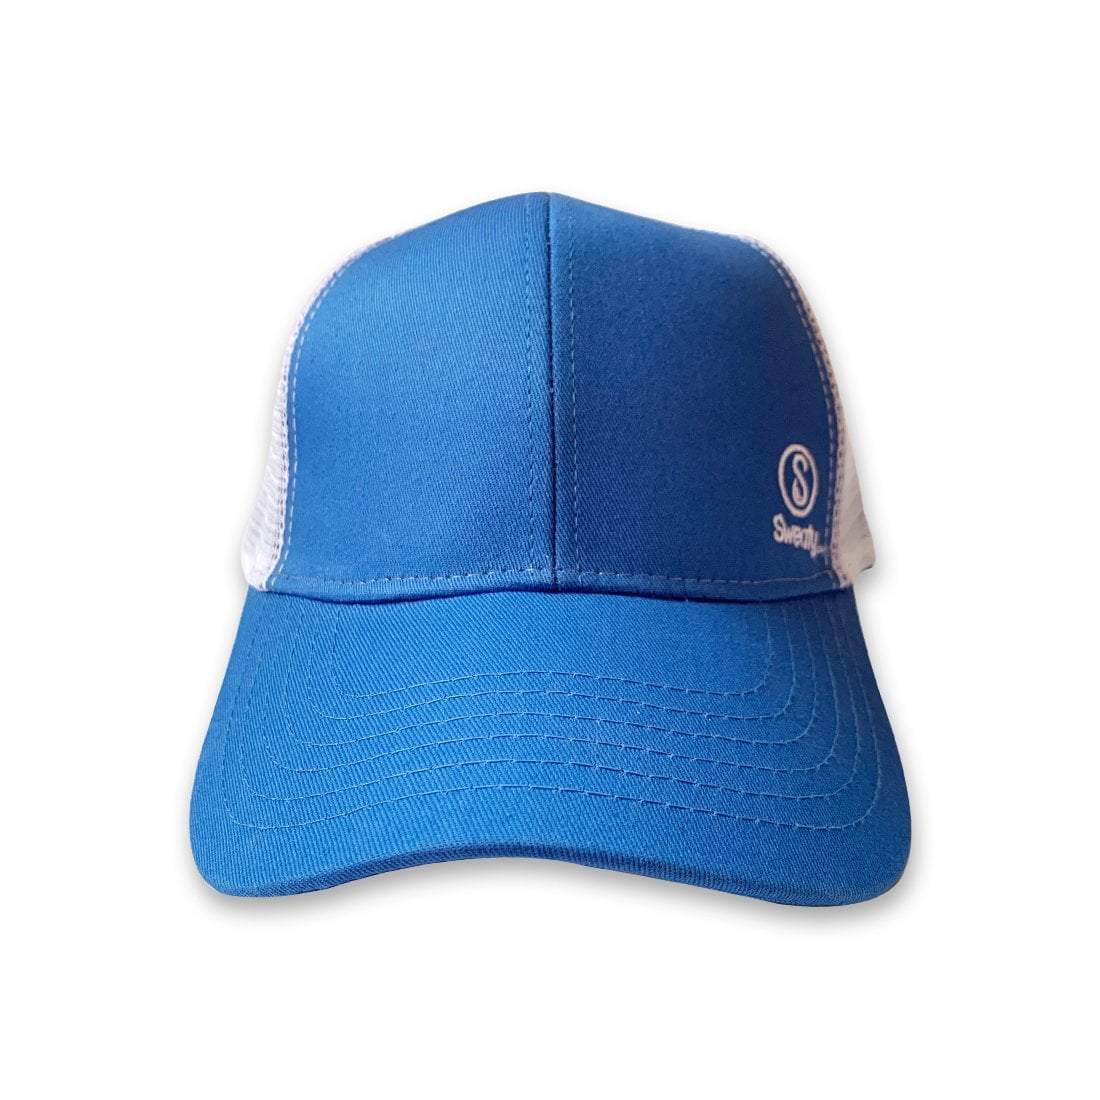 Hats, Baseball Hat, Light Blue, White